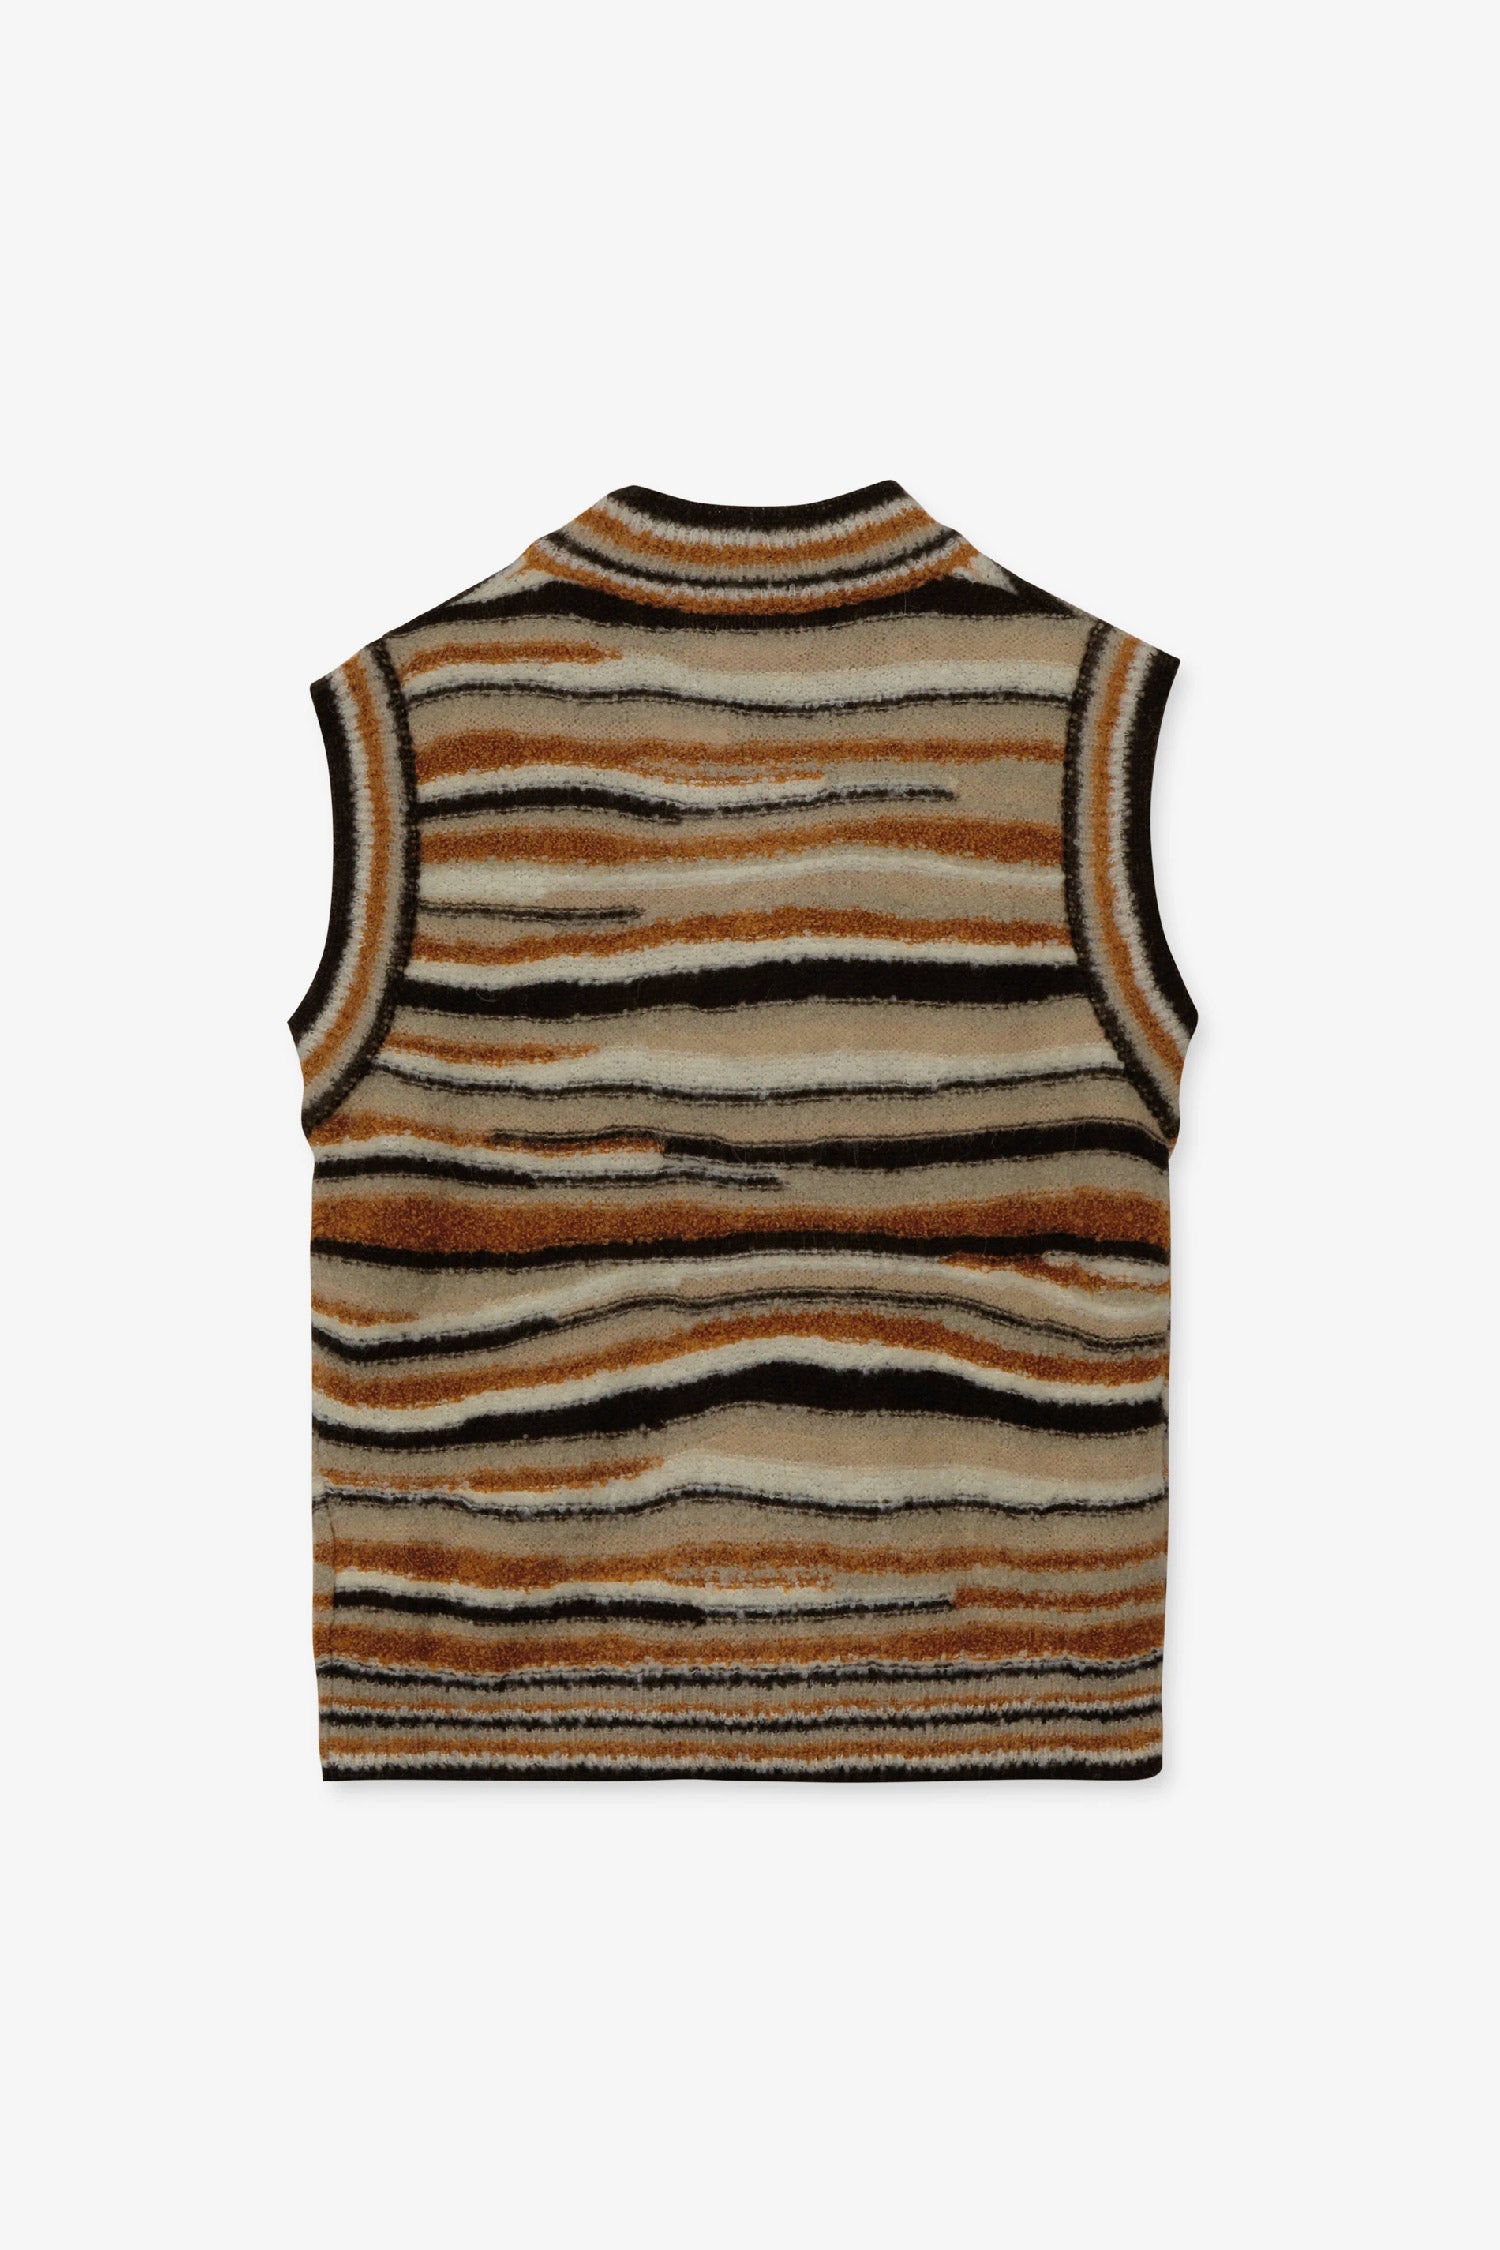 Selectshop FRAME - ERL Knit Vest Outerwear Dubai